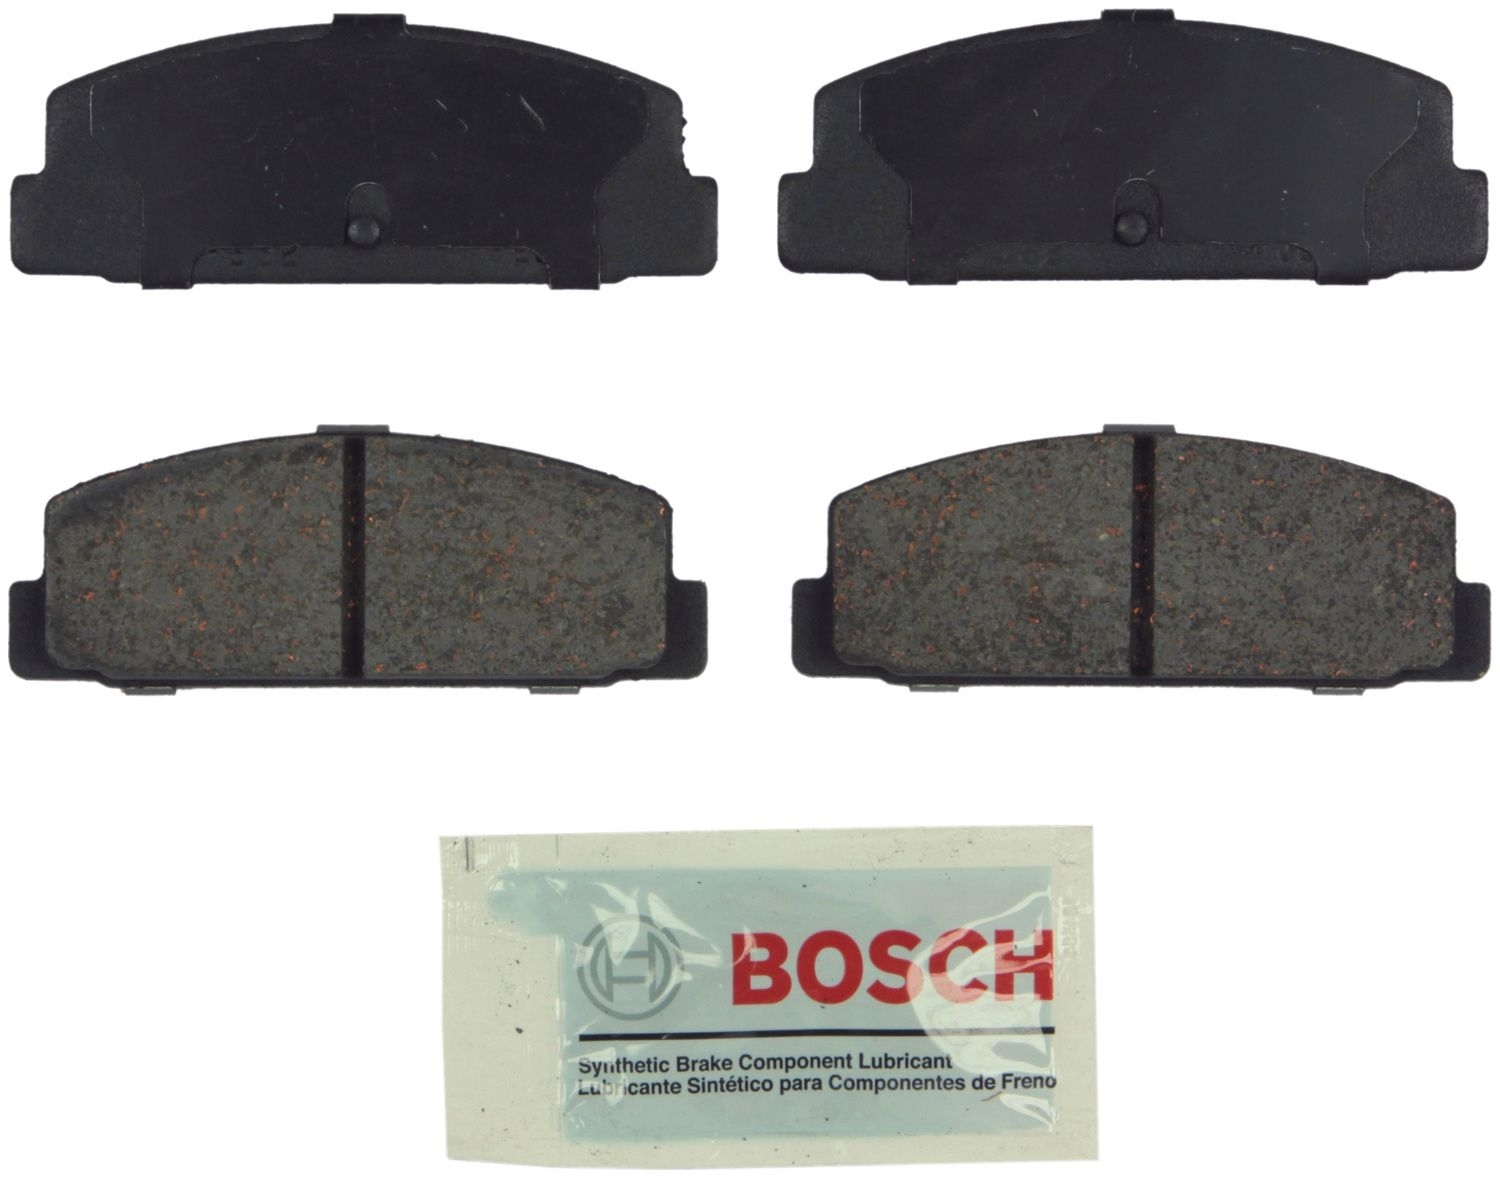 BOSCH BRAKE - Bosch Blue Ceramic Brake Pads - BQC BE332